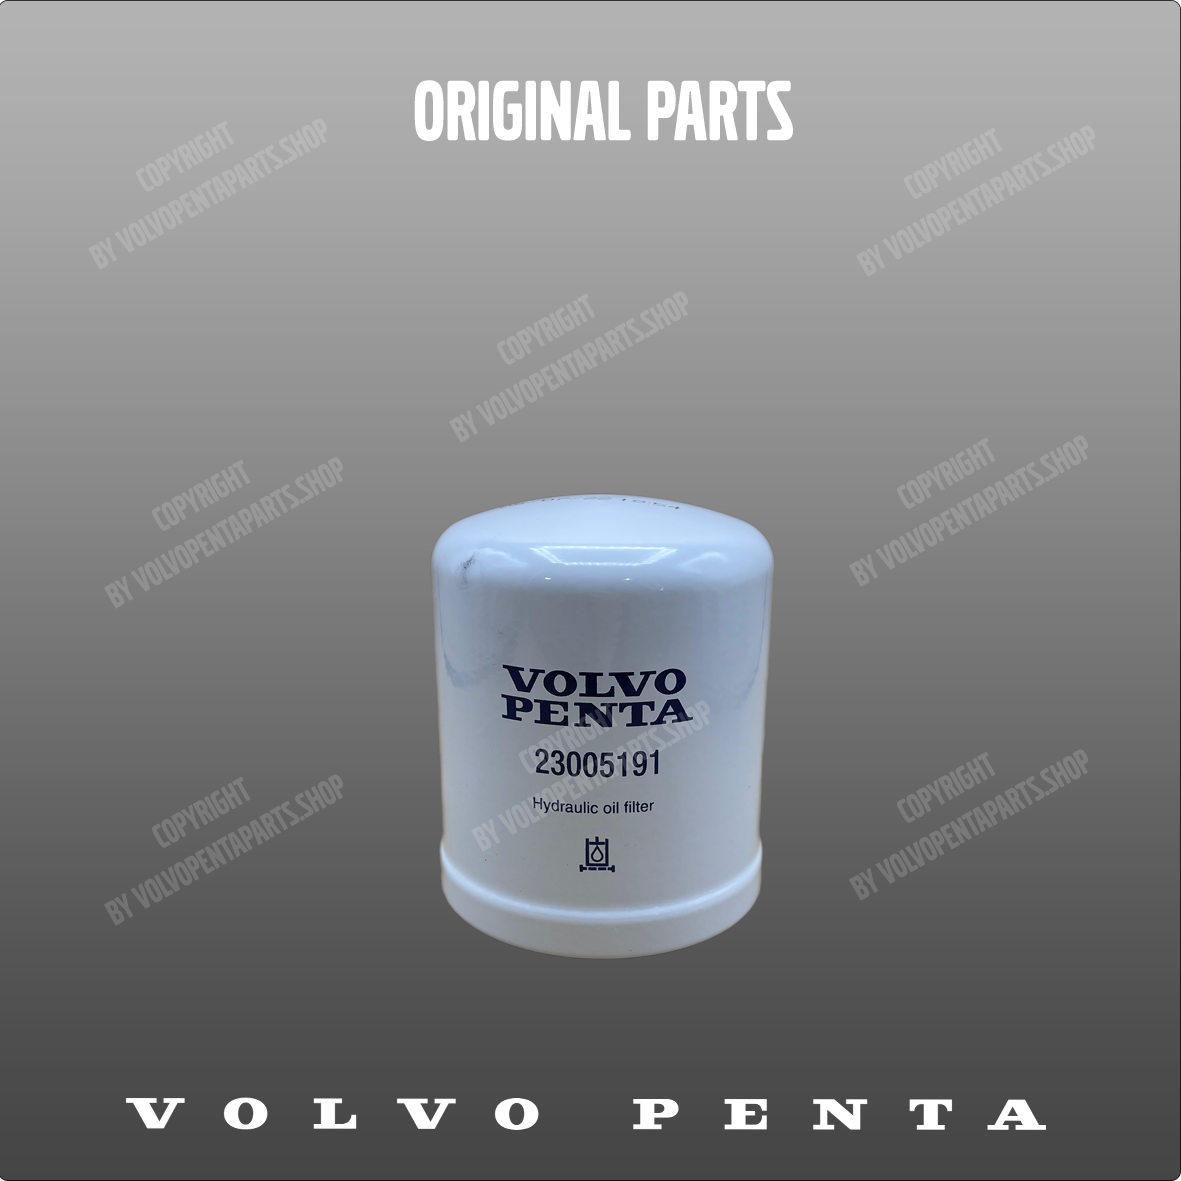 Volvo Penta oil filter 23005191